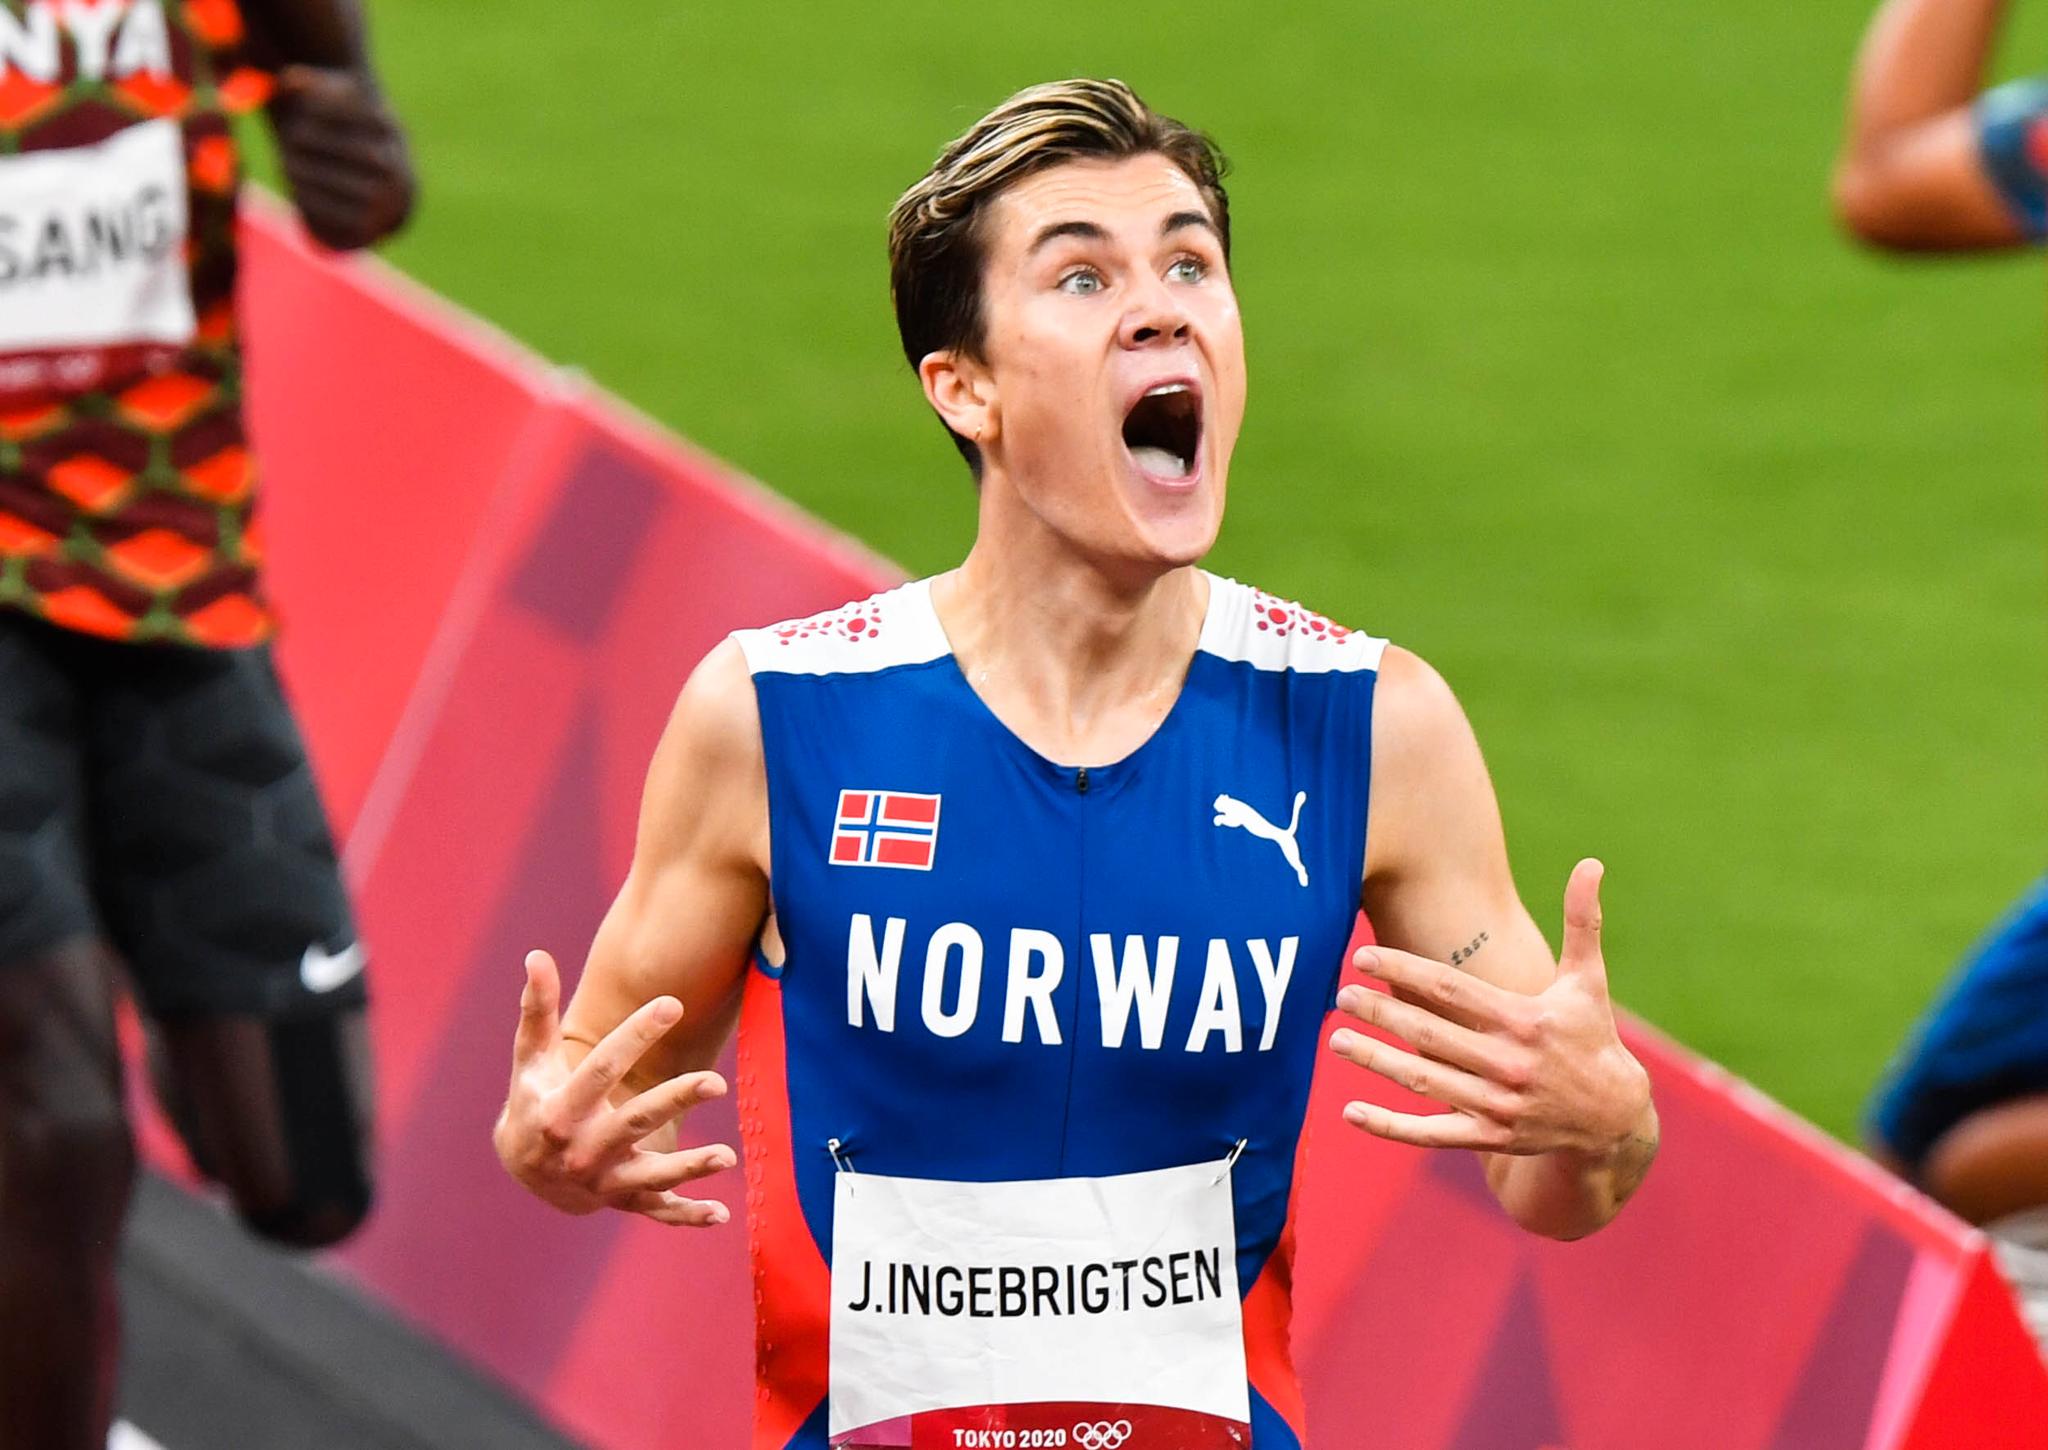 OL-VINNER: Jakob Ingebrigtsen inn som olympisk mester på 1500 meter.